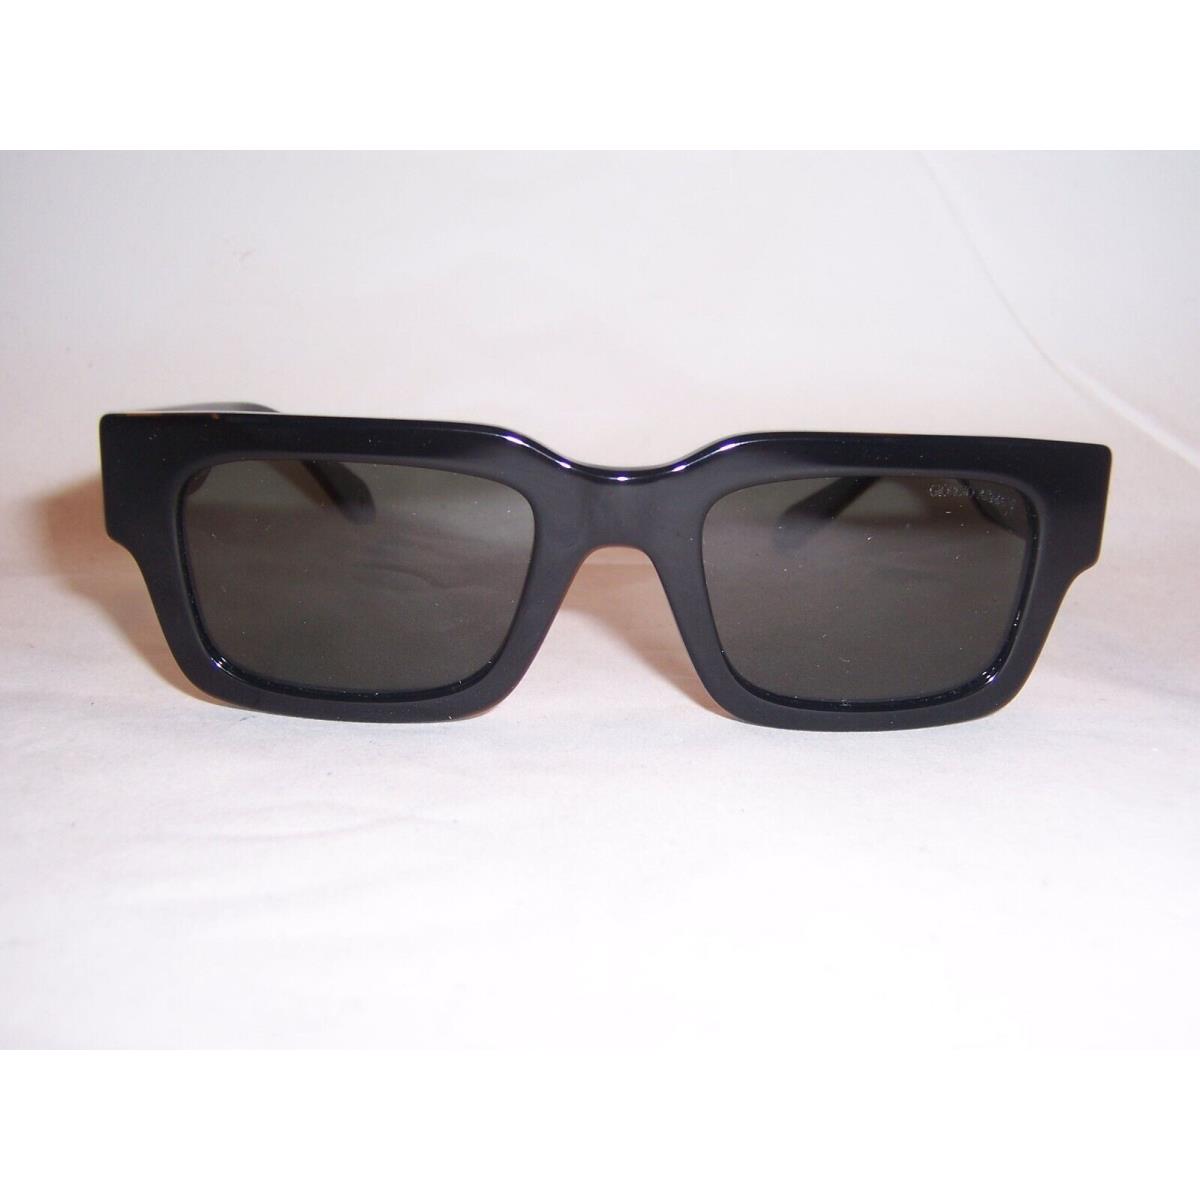 Giorgio Armani sunglasses  - Black Frame, Gray Lens 3